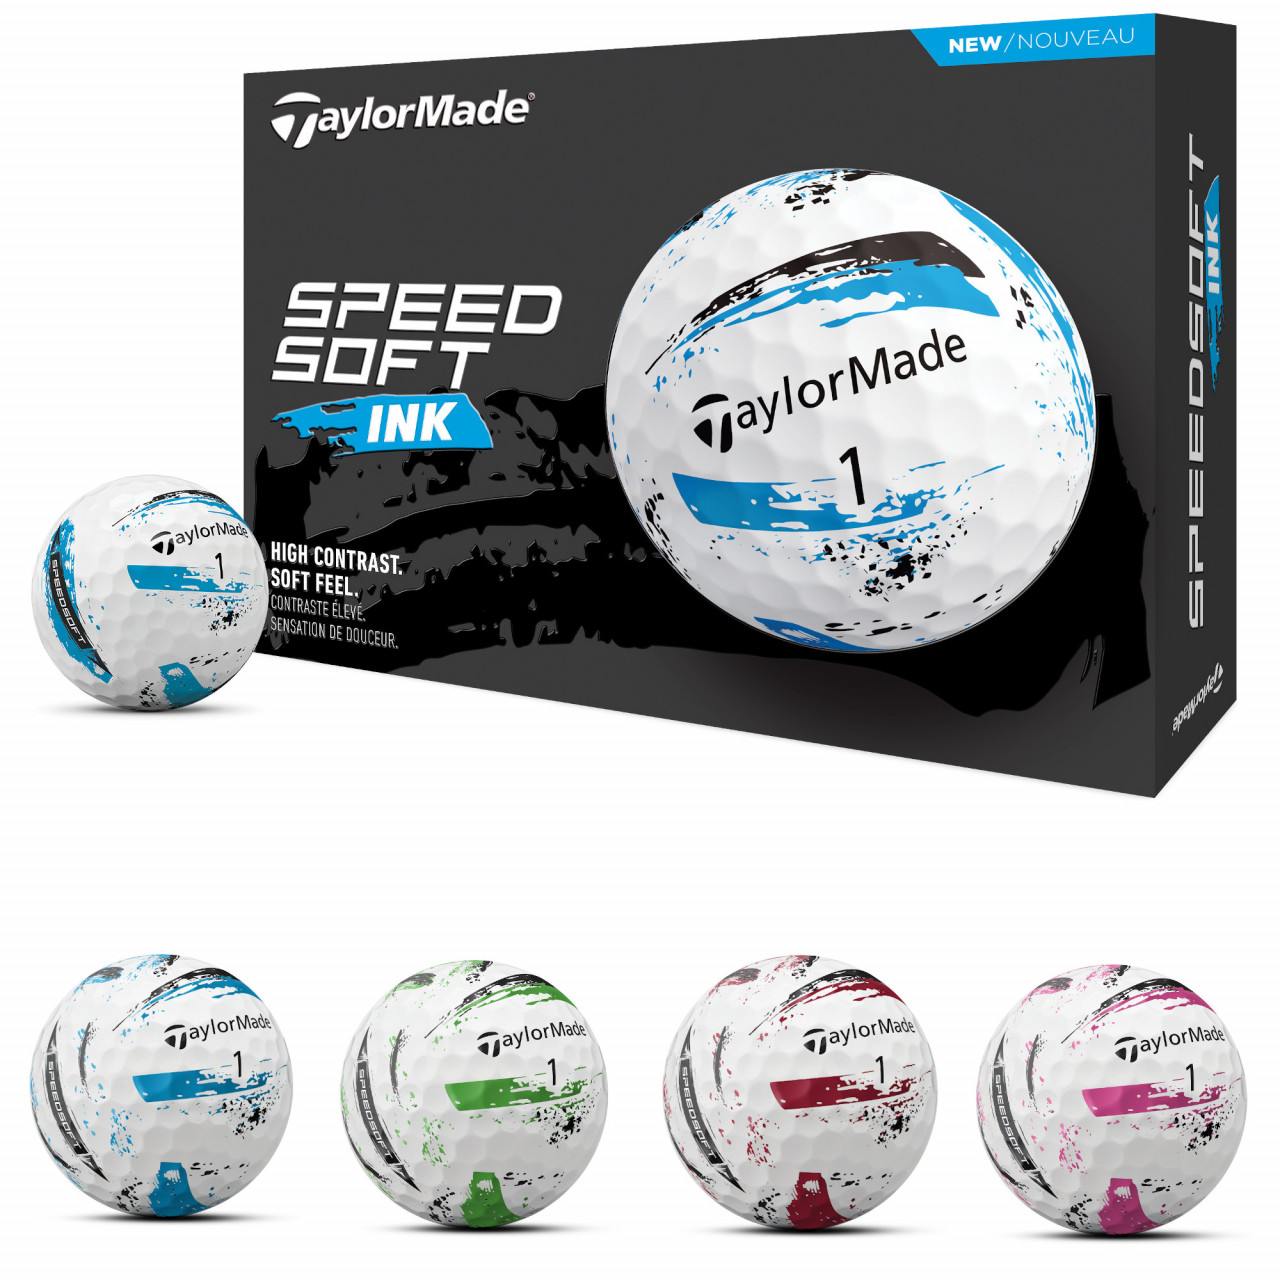 Taylor Made SpeedSoft INK Golfbälle, 12 Stück